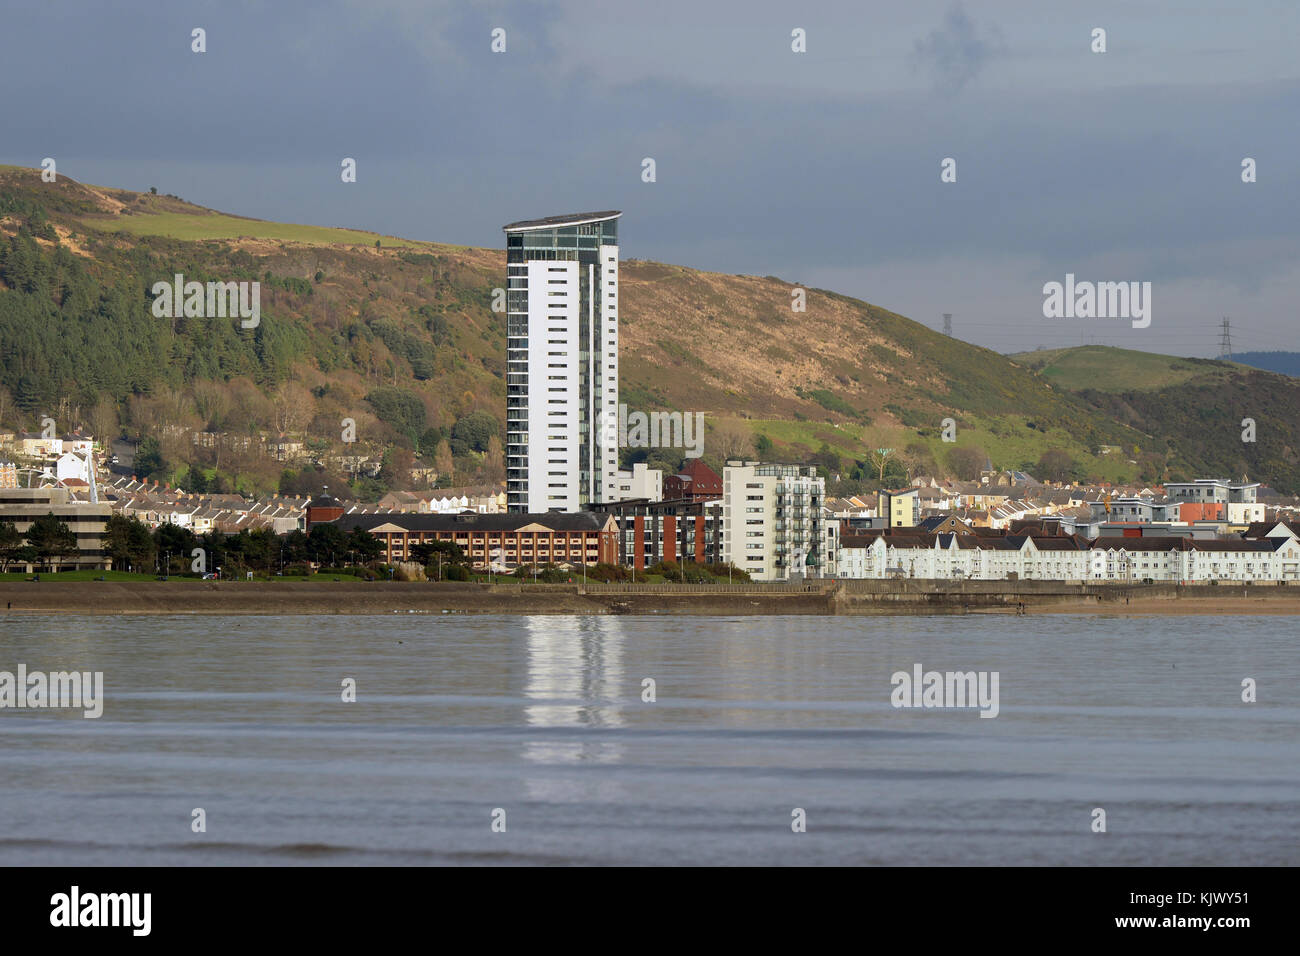 Swansea City Kultur Angebot 2021 Swansea Marina Viertel mit Gebäuden und Reflexionen in der Bucht gesehen von mumbles. Meer Stadt. Stockfoto